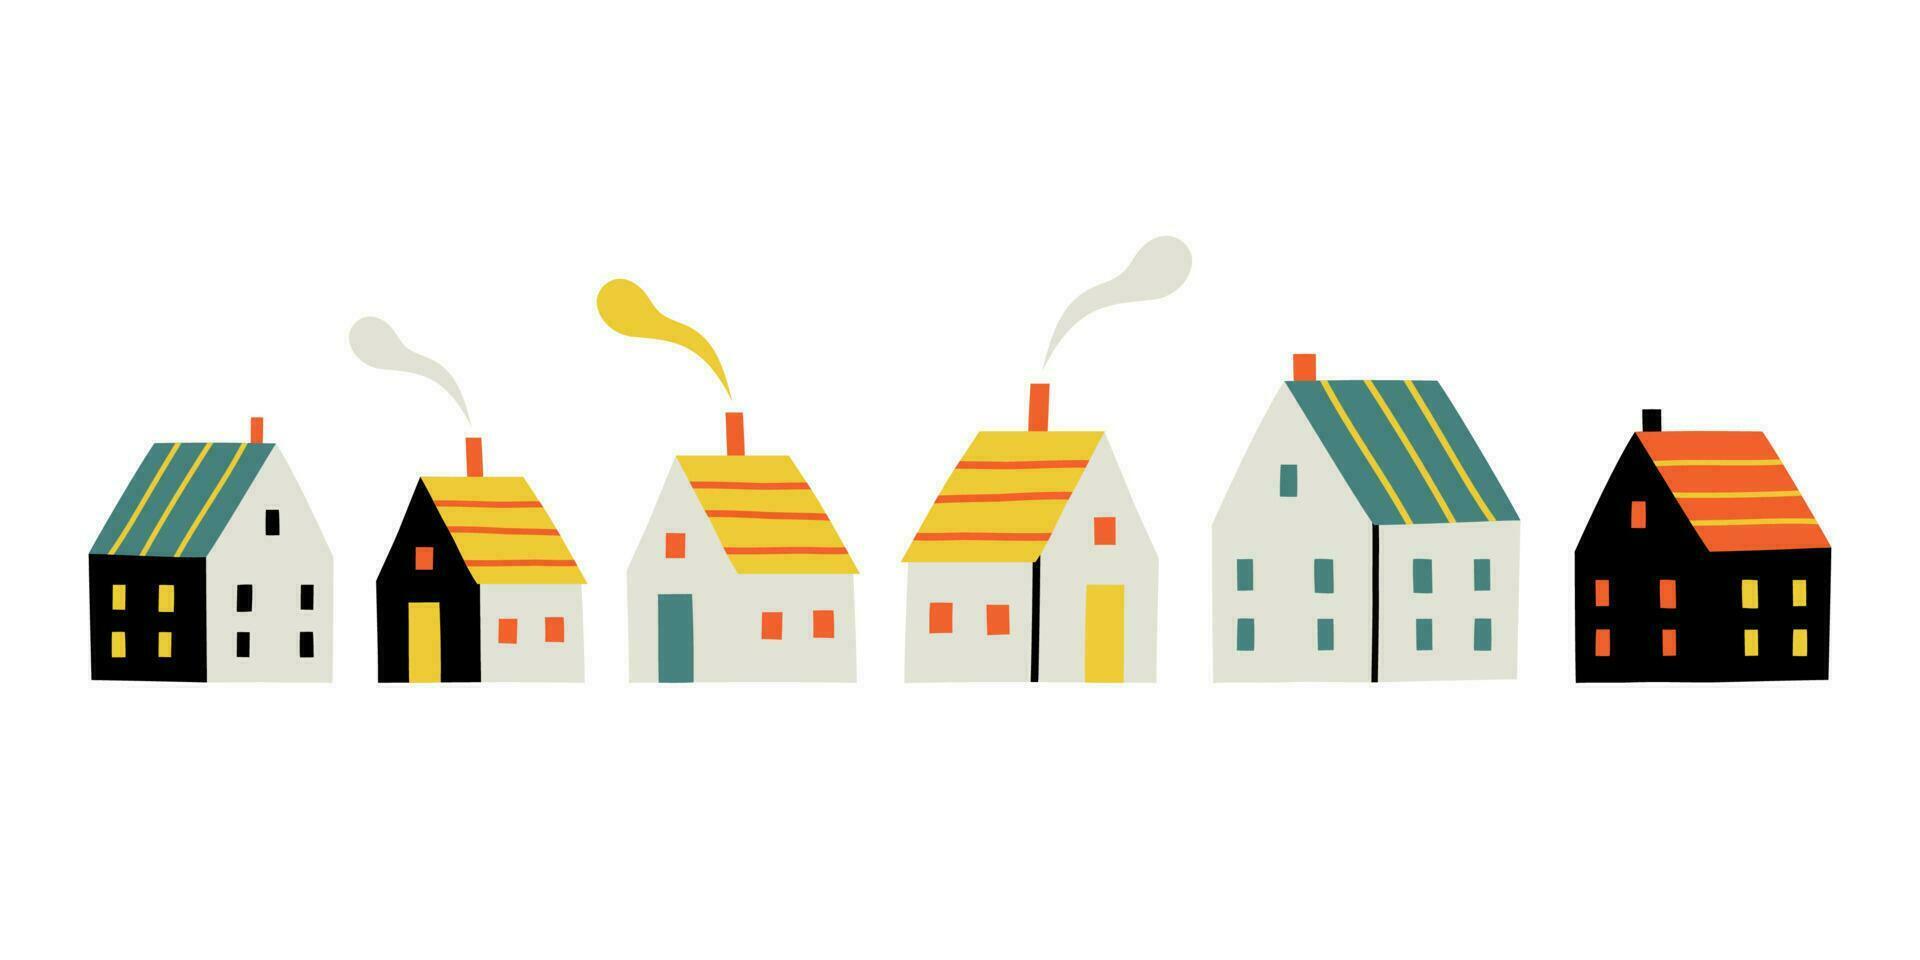 linda país casas en plano de moda estilo. vector ilustración en escandinavo estilo.